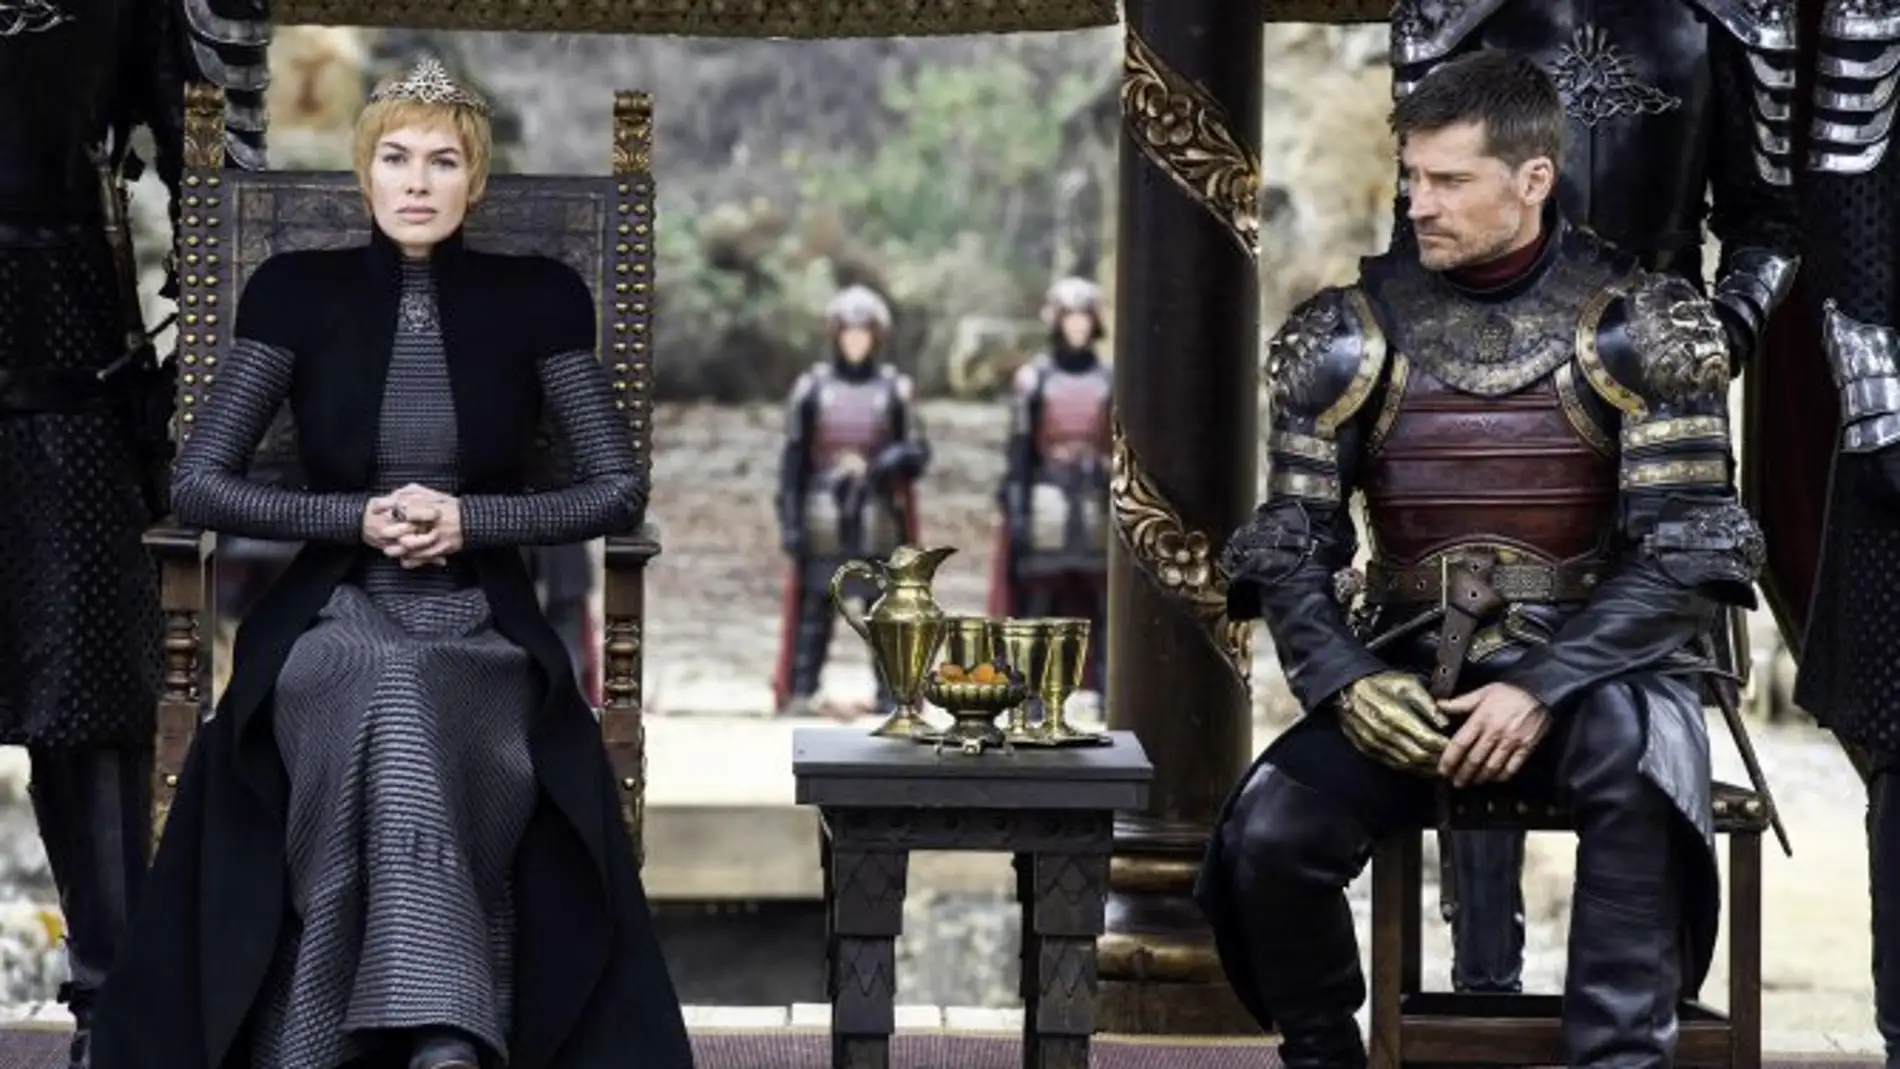 Cersei y Jaime Lannister en el final de temporada de 'Juego de Tronos'